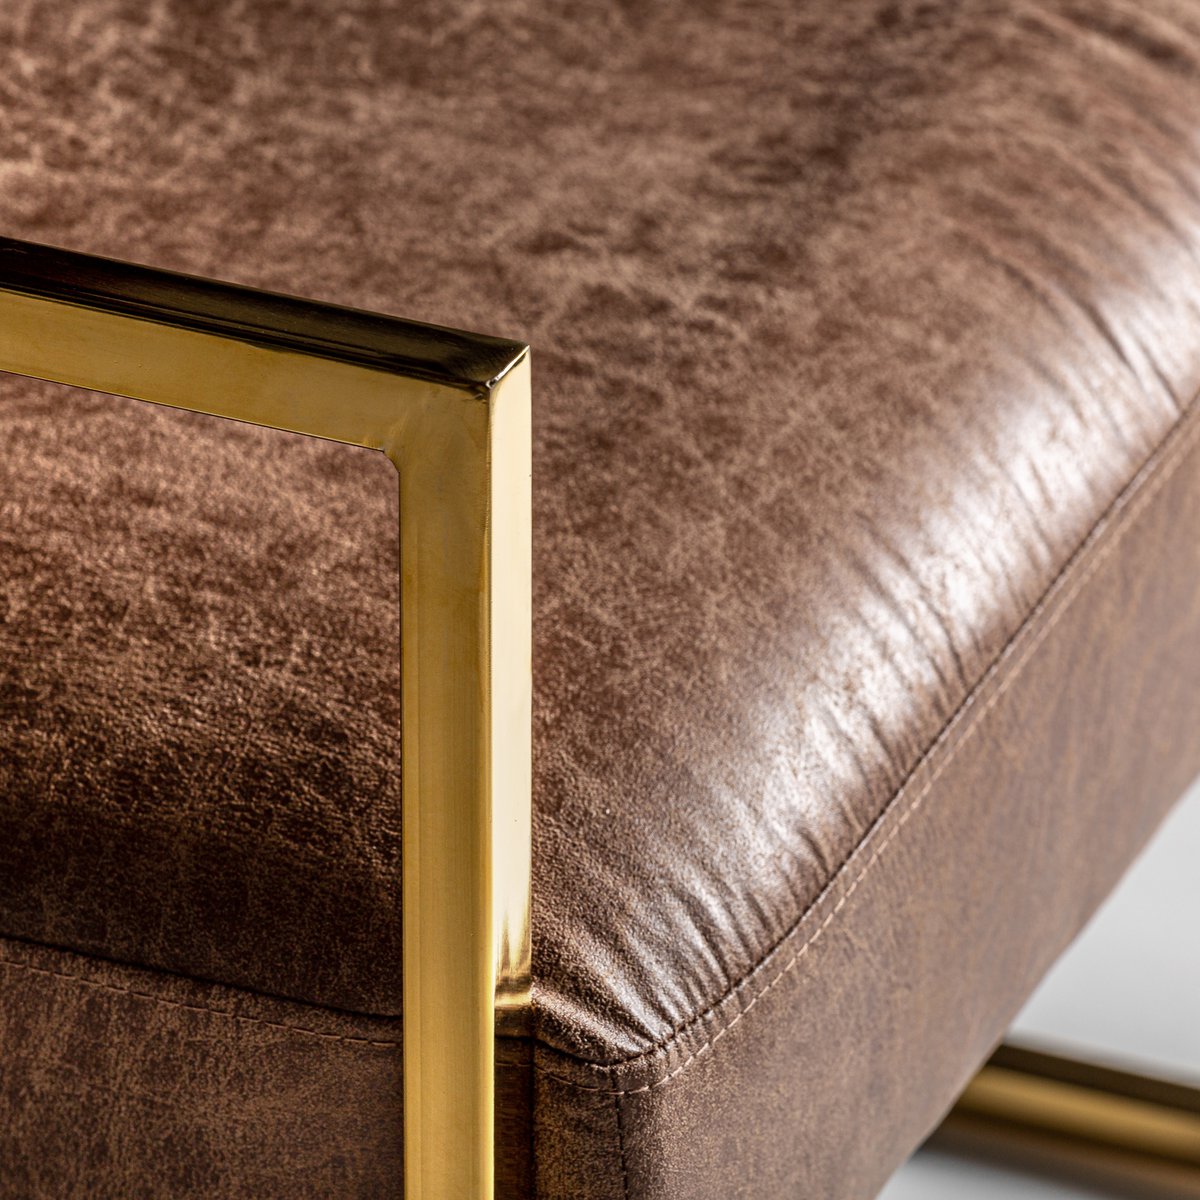 Brooklyn fauteuil met goudkleurige metalen poten bekleed met een zacht imitatieleer in metallic bronskleur afwerking